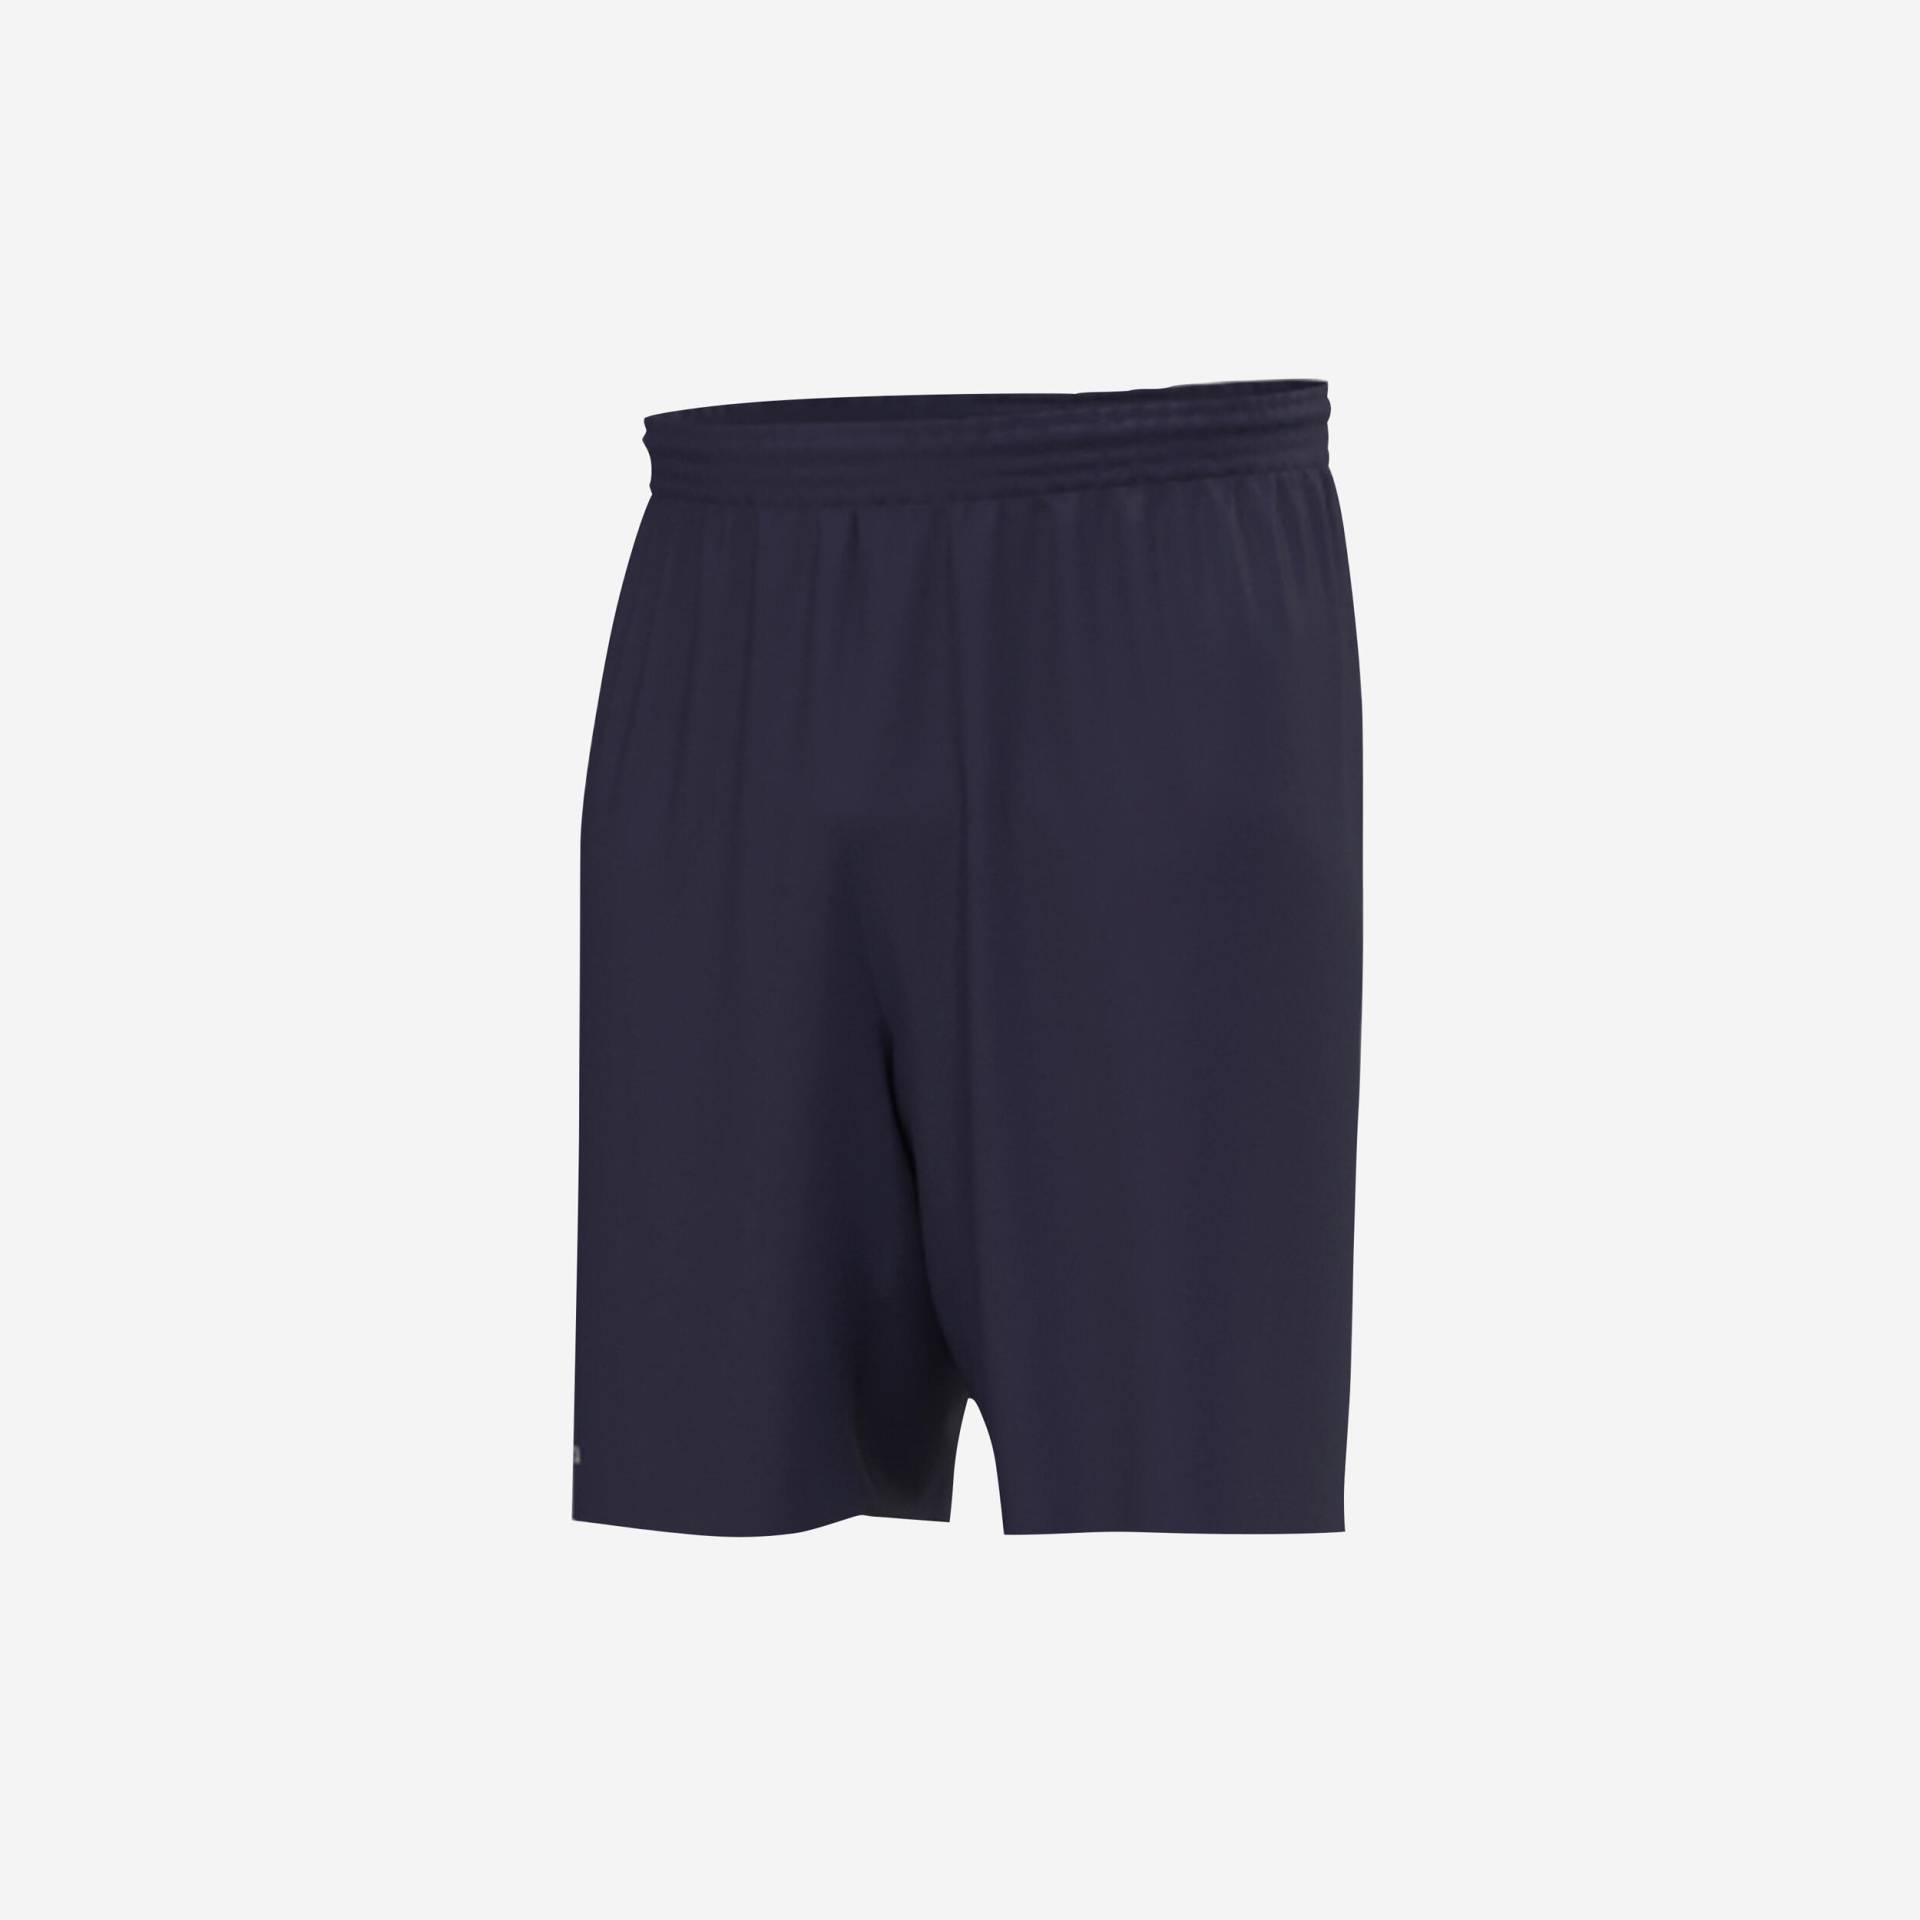 Damen/Herren Fussball Shorts - Essentiel marineblau von KIPSTA